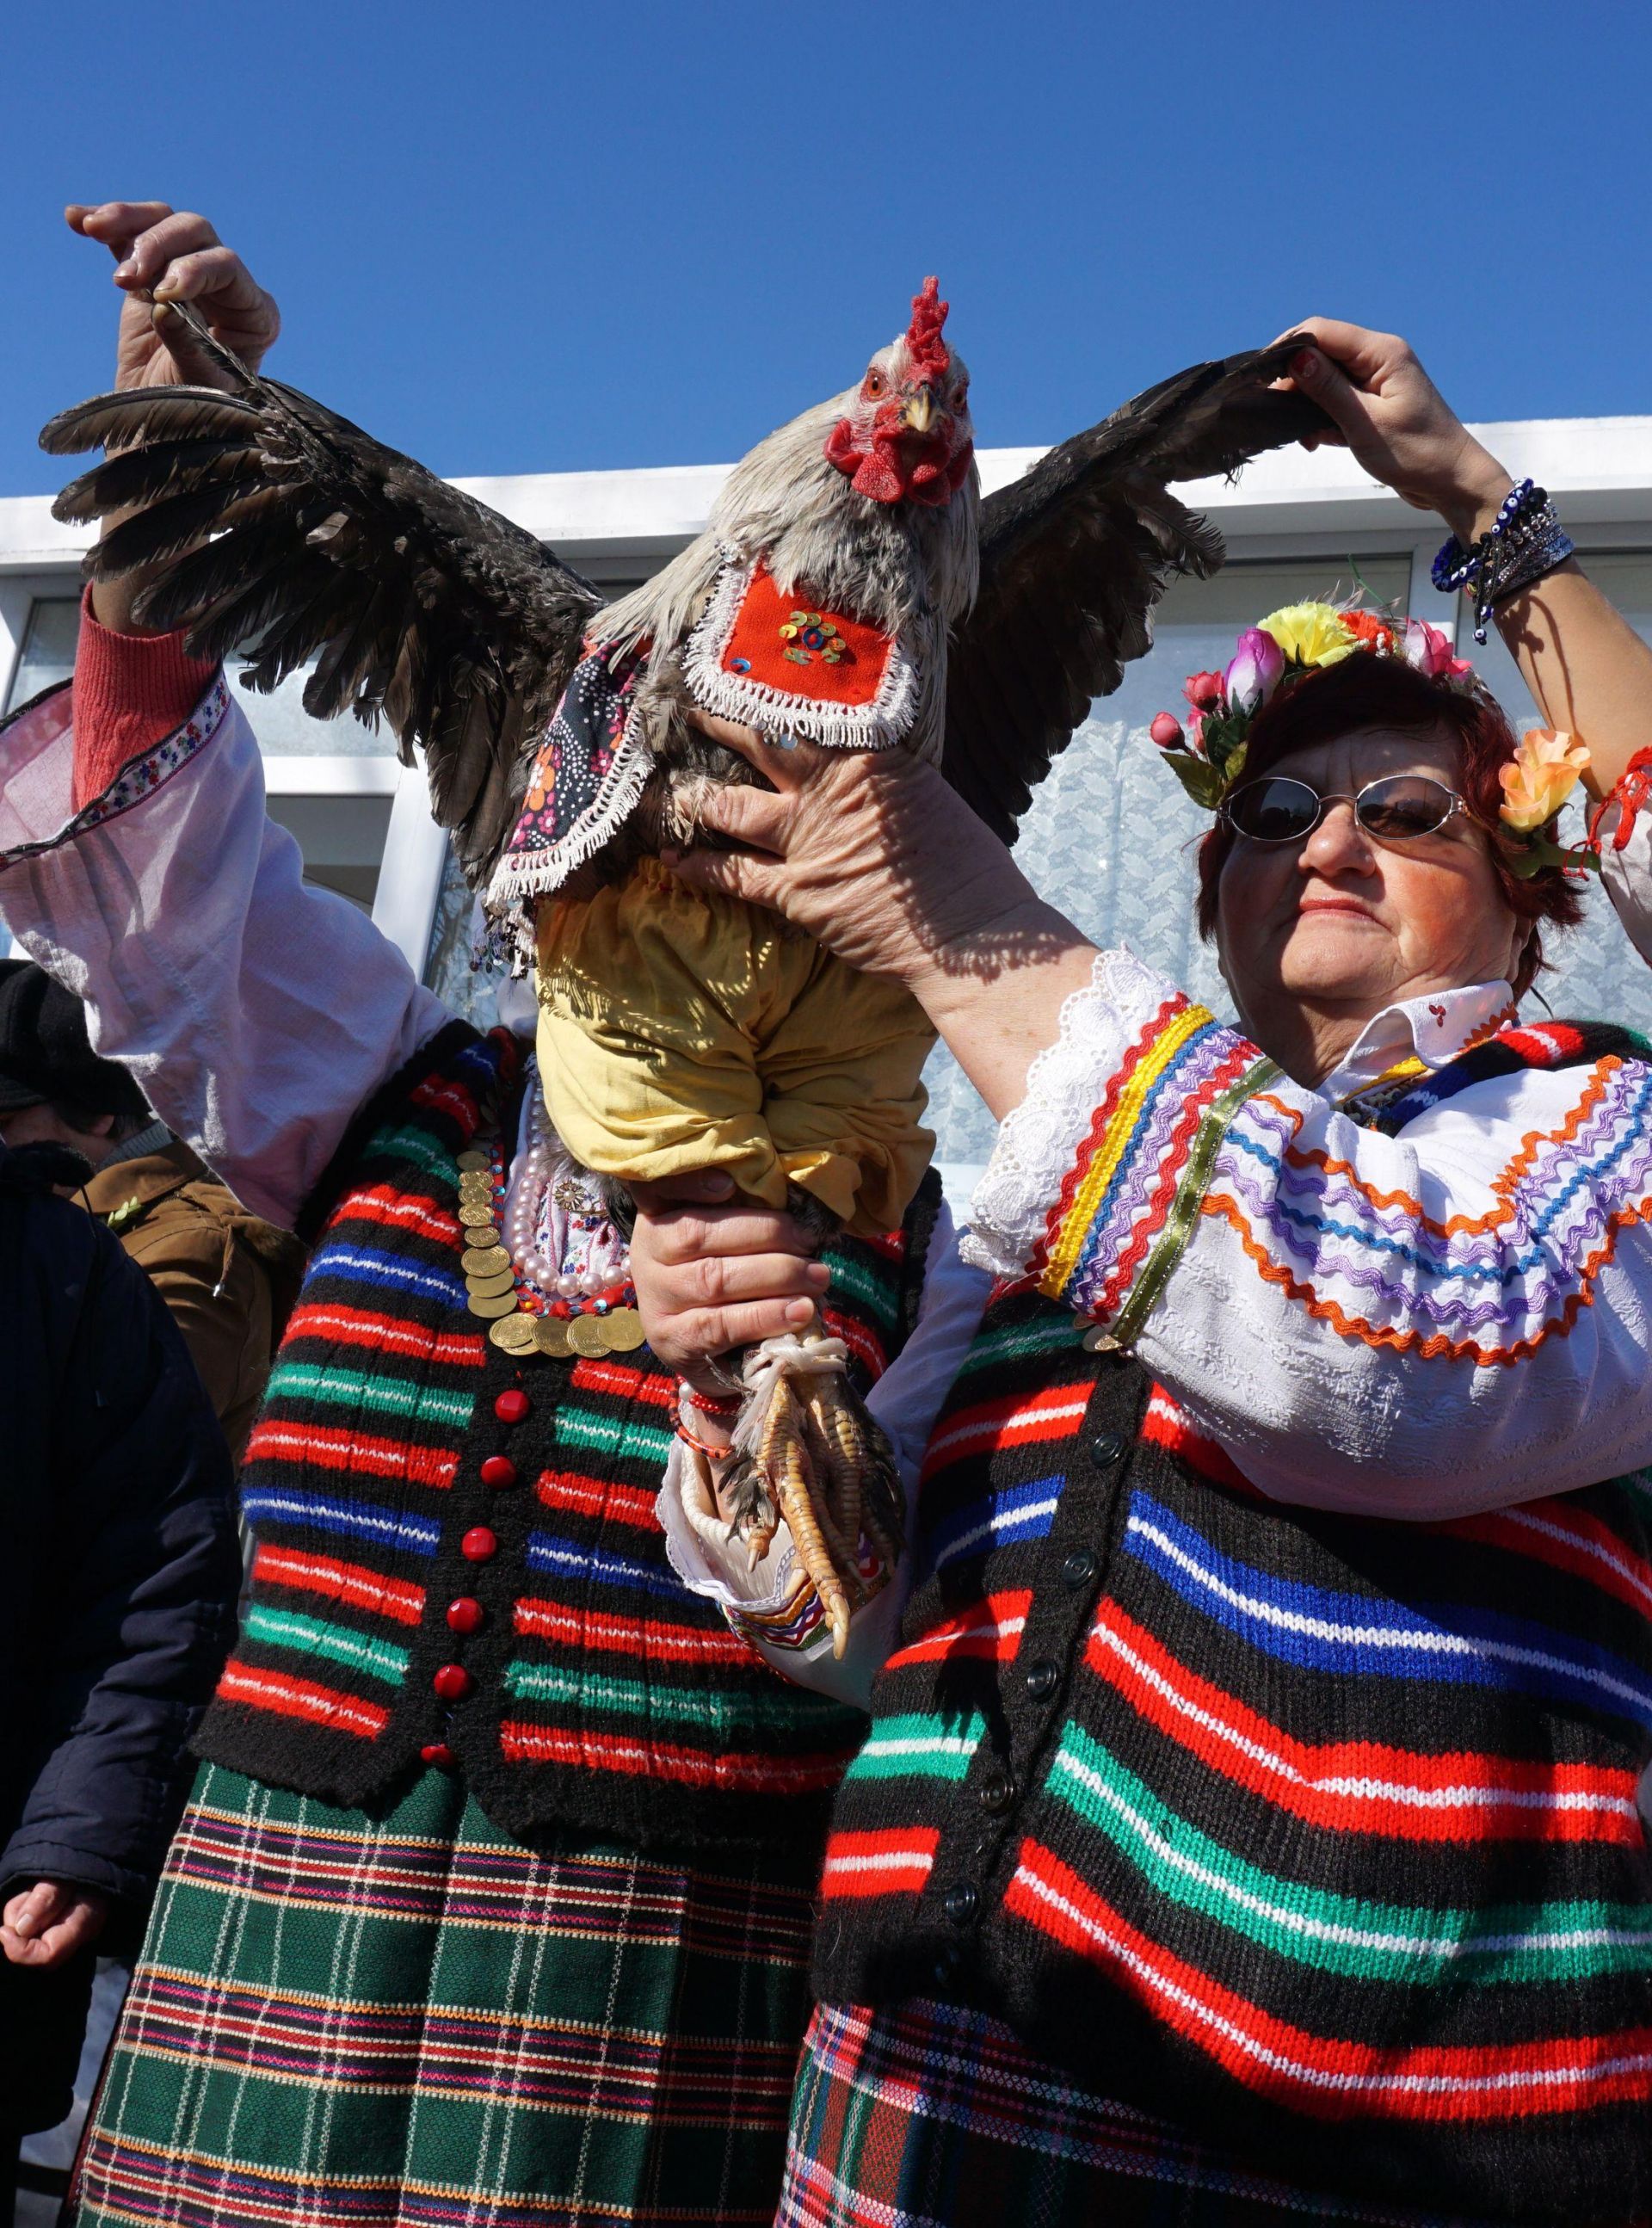 Във варненските села Голица, Кривини, Солник, Добри дол, Козичино в България са запазили традициите и отбелязват автентично празника на  мъжките рожби "Петльовден".